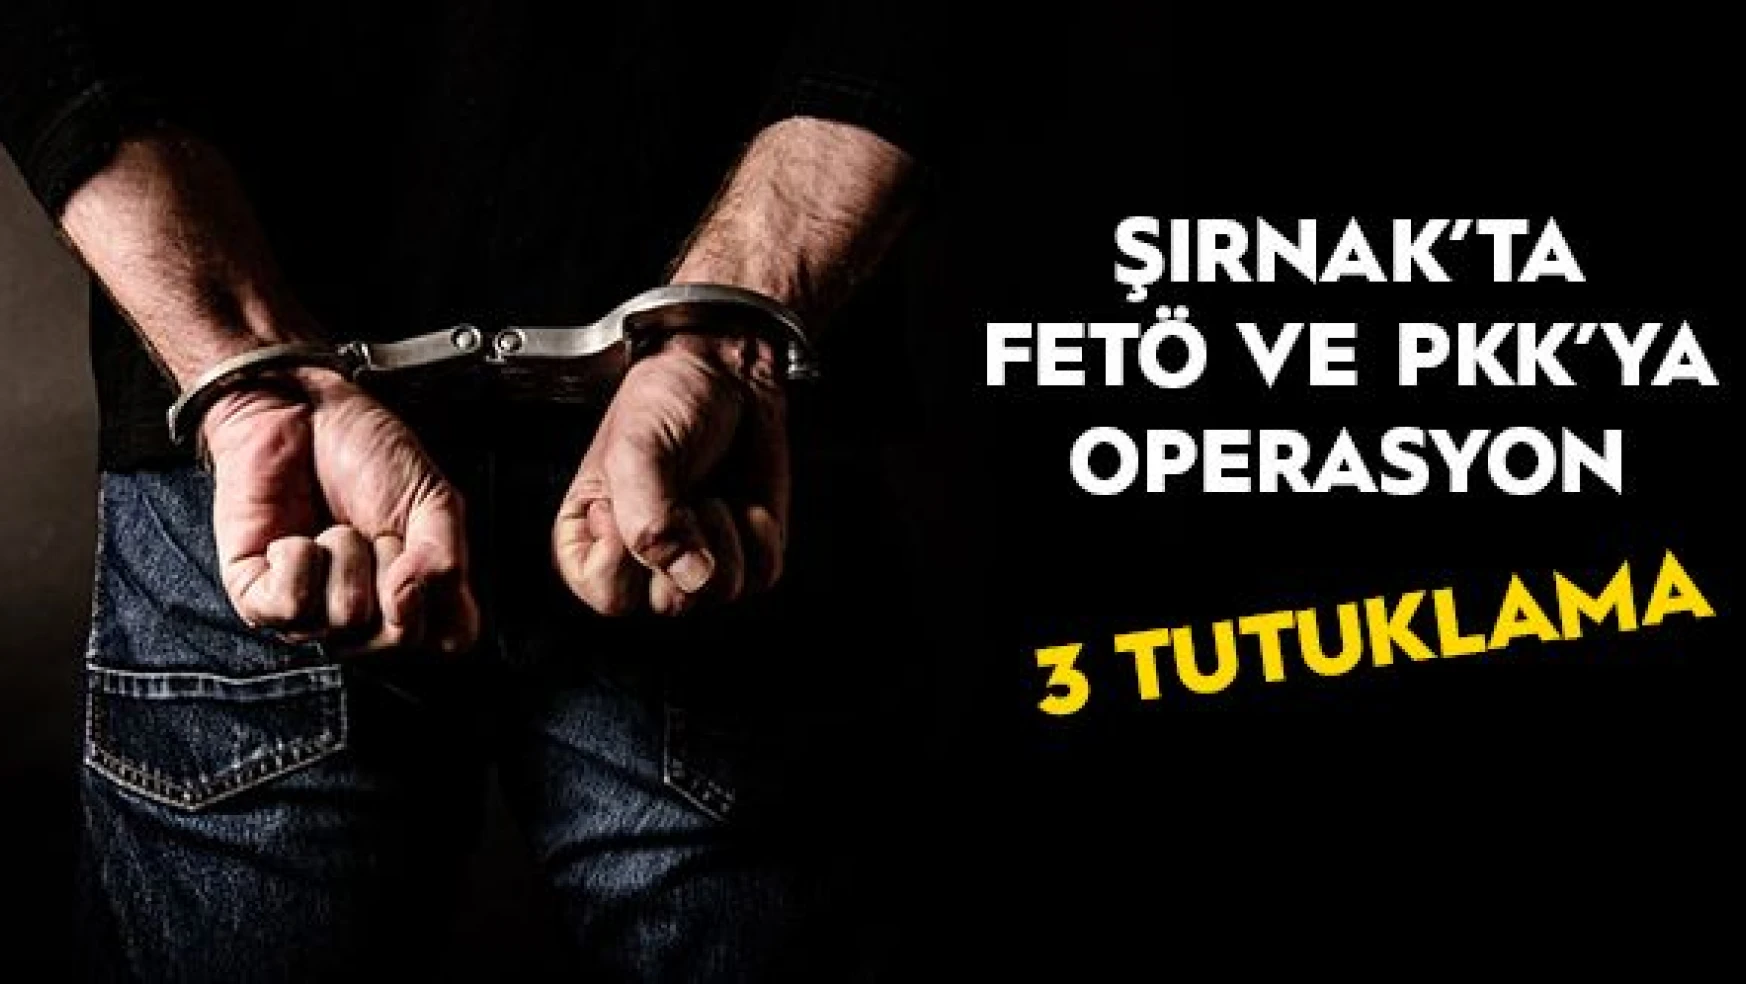 FETÖ ve PKK'ya yönelik operasyon: 3 kişi tutuklandı